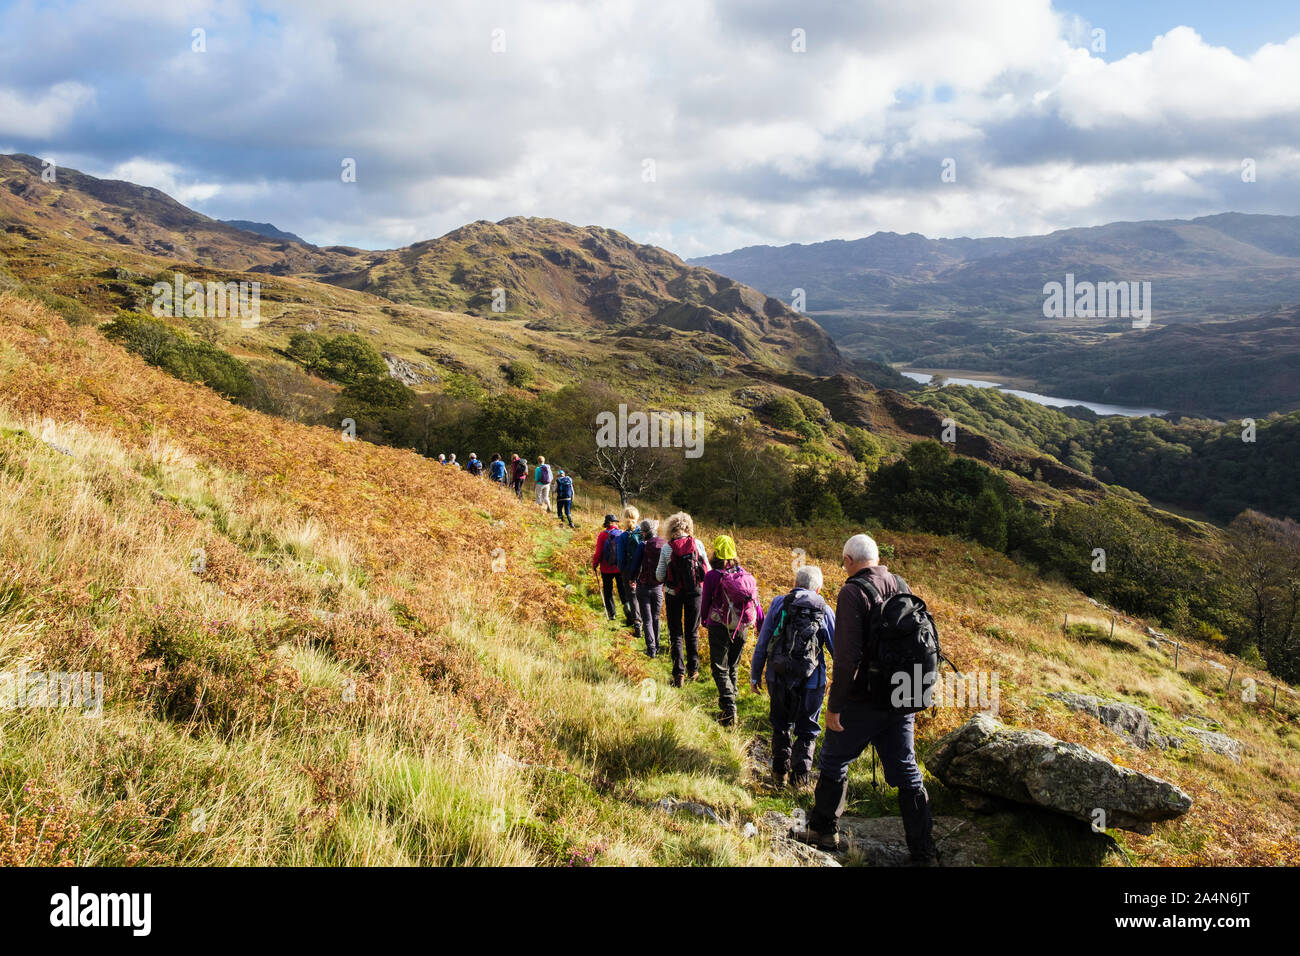 Groupe de Randonneurs marchant dans une longue ligne sur le chemin d'un pays au-dessus de Nant Gwynant dans collines du Parc National de Snowdonia. , Beddgelert Gwynedd, au nord du Pays de Galles, Royaume-Uni Banque D'Images